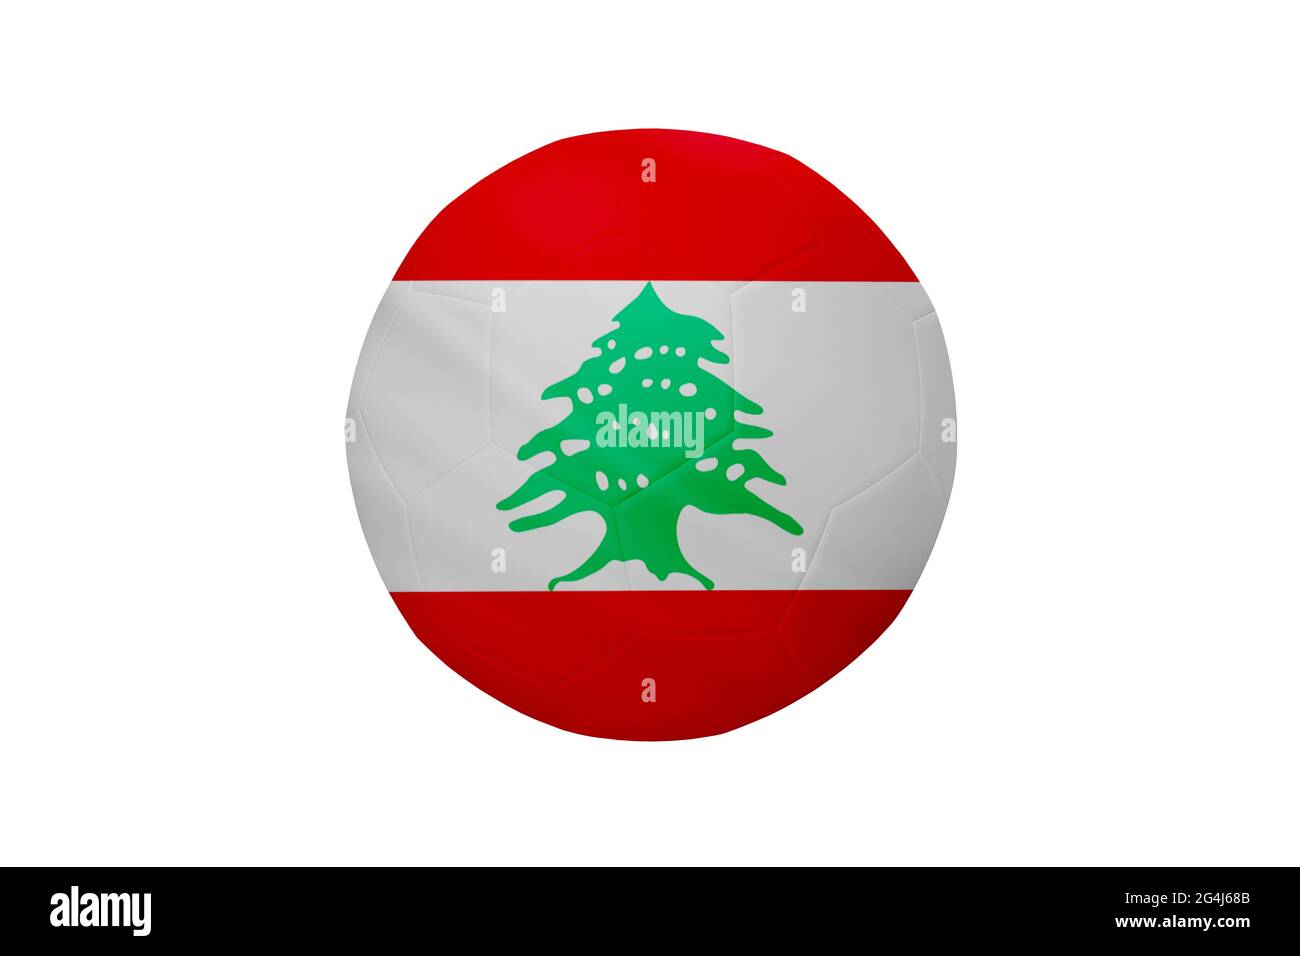 Fußball in den Farben der Libanon-Flagge isoliert auf weißem Hintergrund. In einem konzeptionellen Meisterschaftsbild, das den Libanon unterstützt. Stockfoto